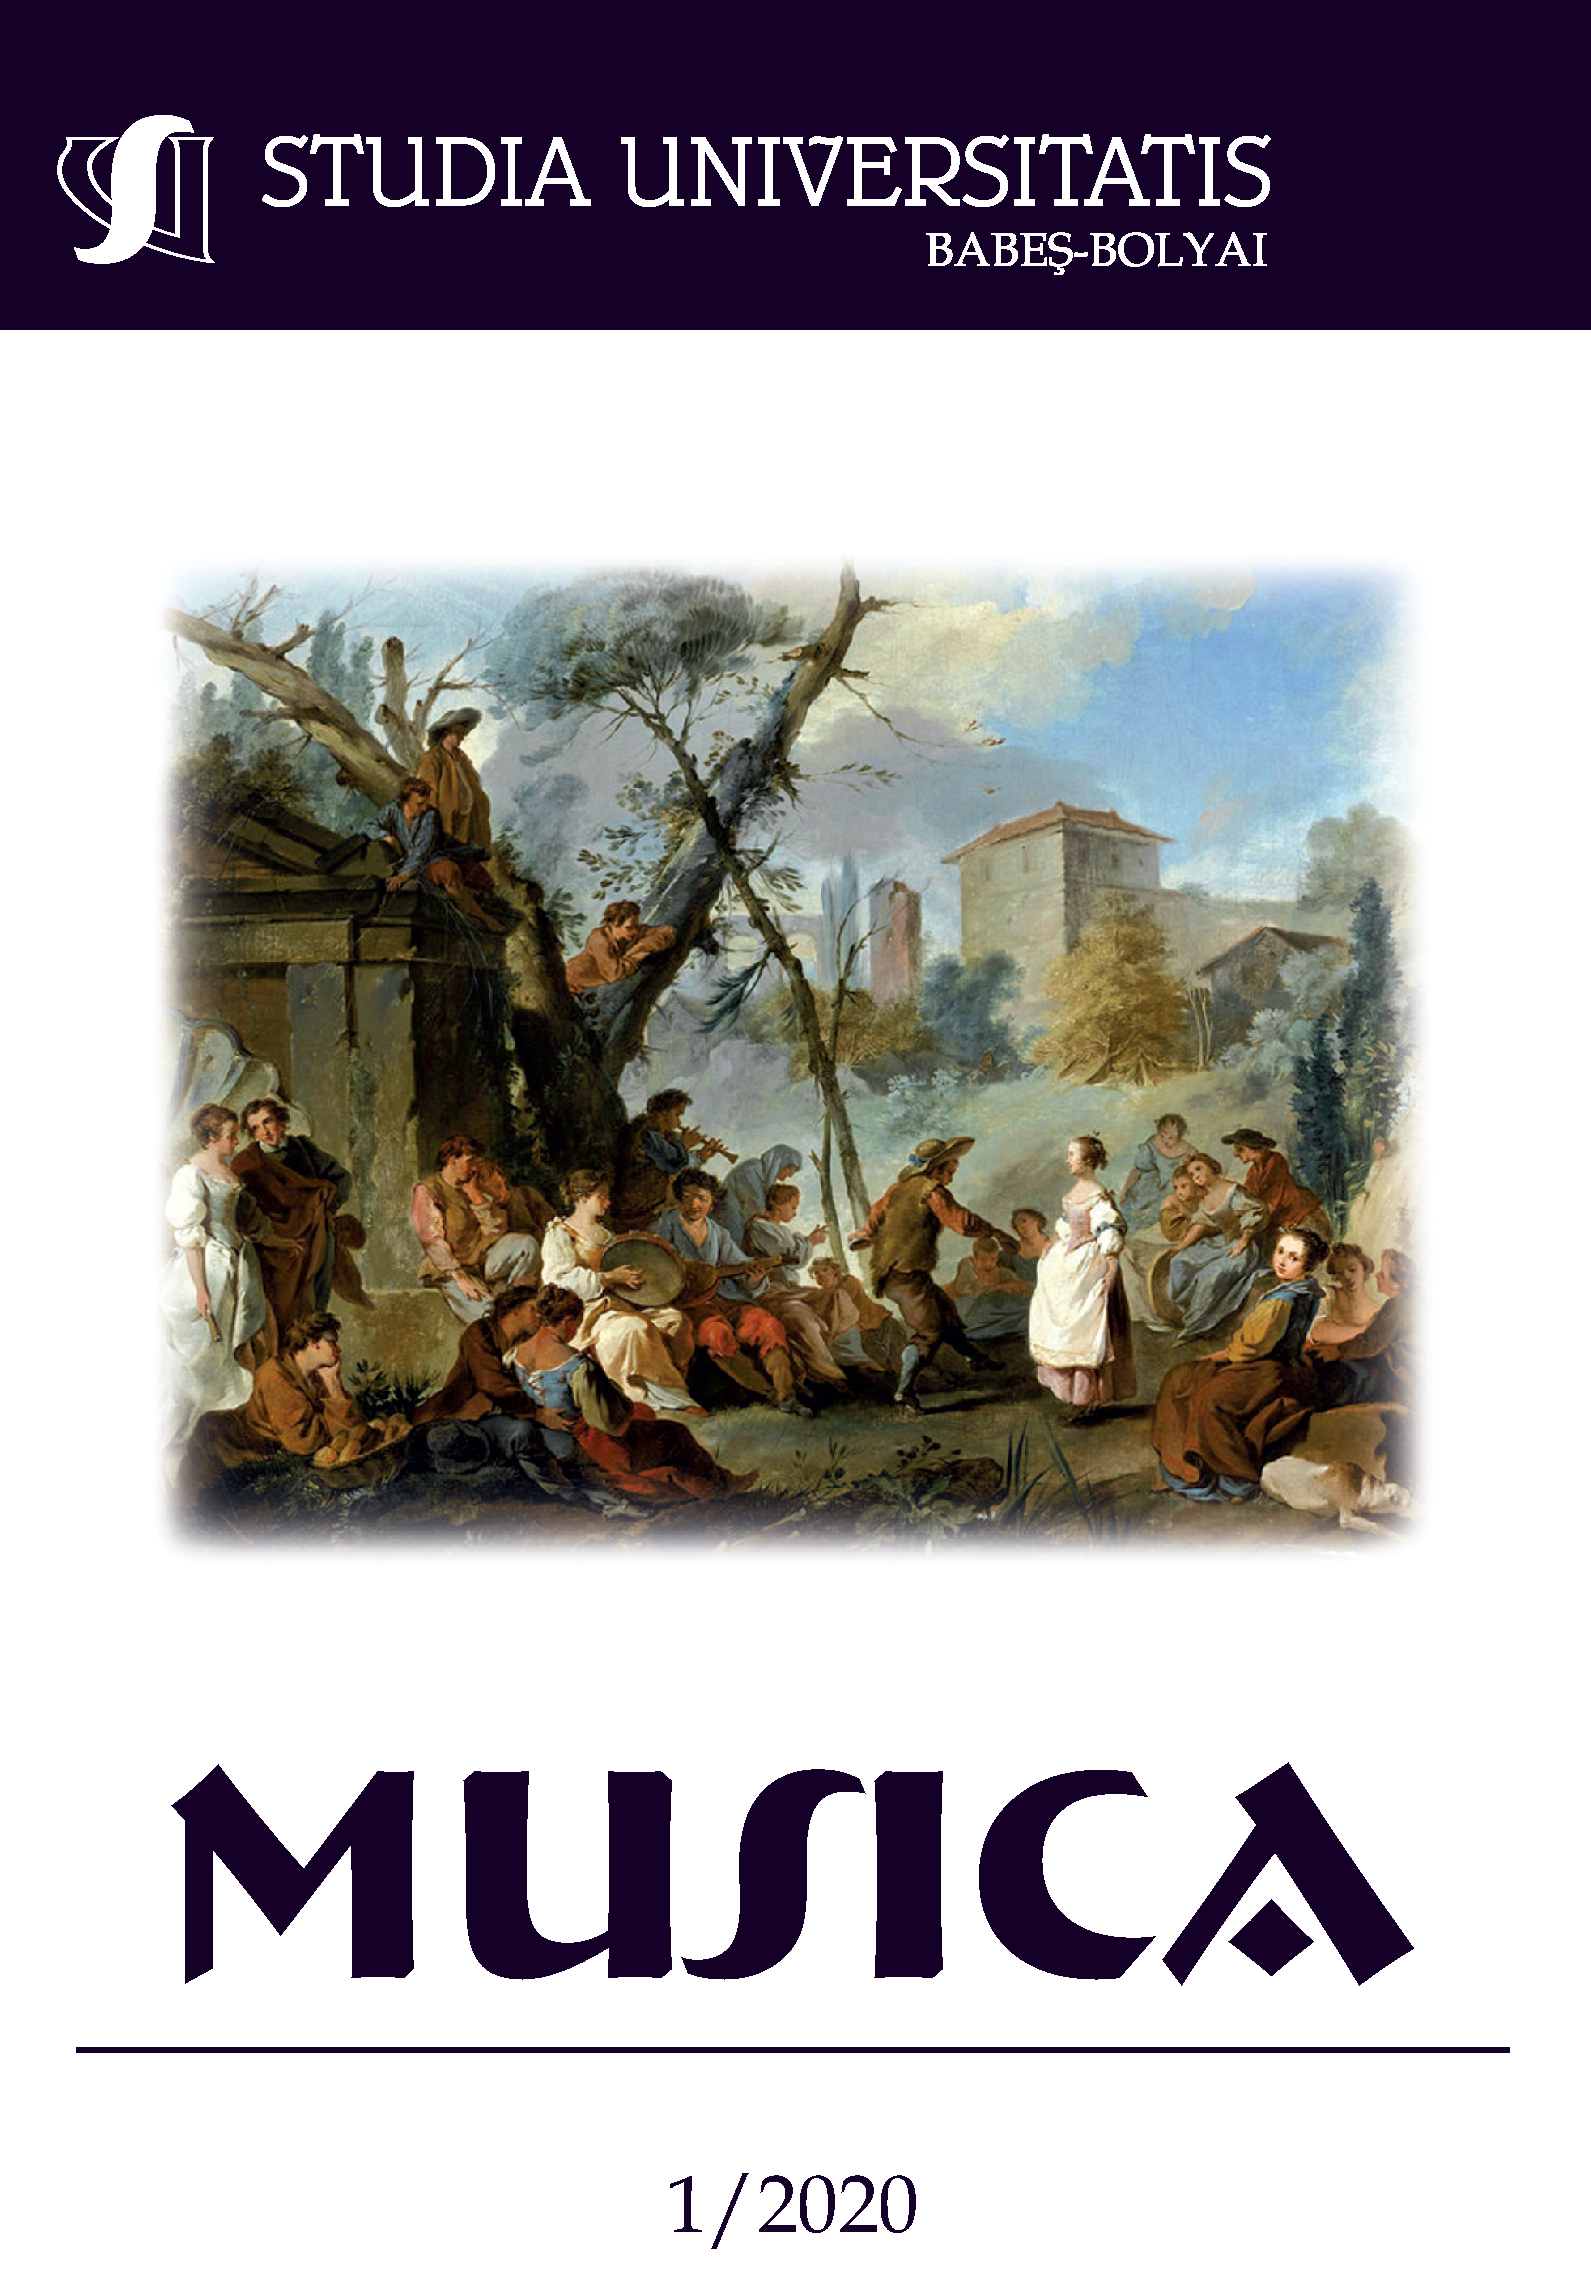 STUDIA UBB MUSICA, Volume 65 (LXV), No. 1, June 2020